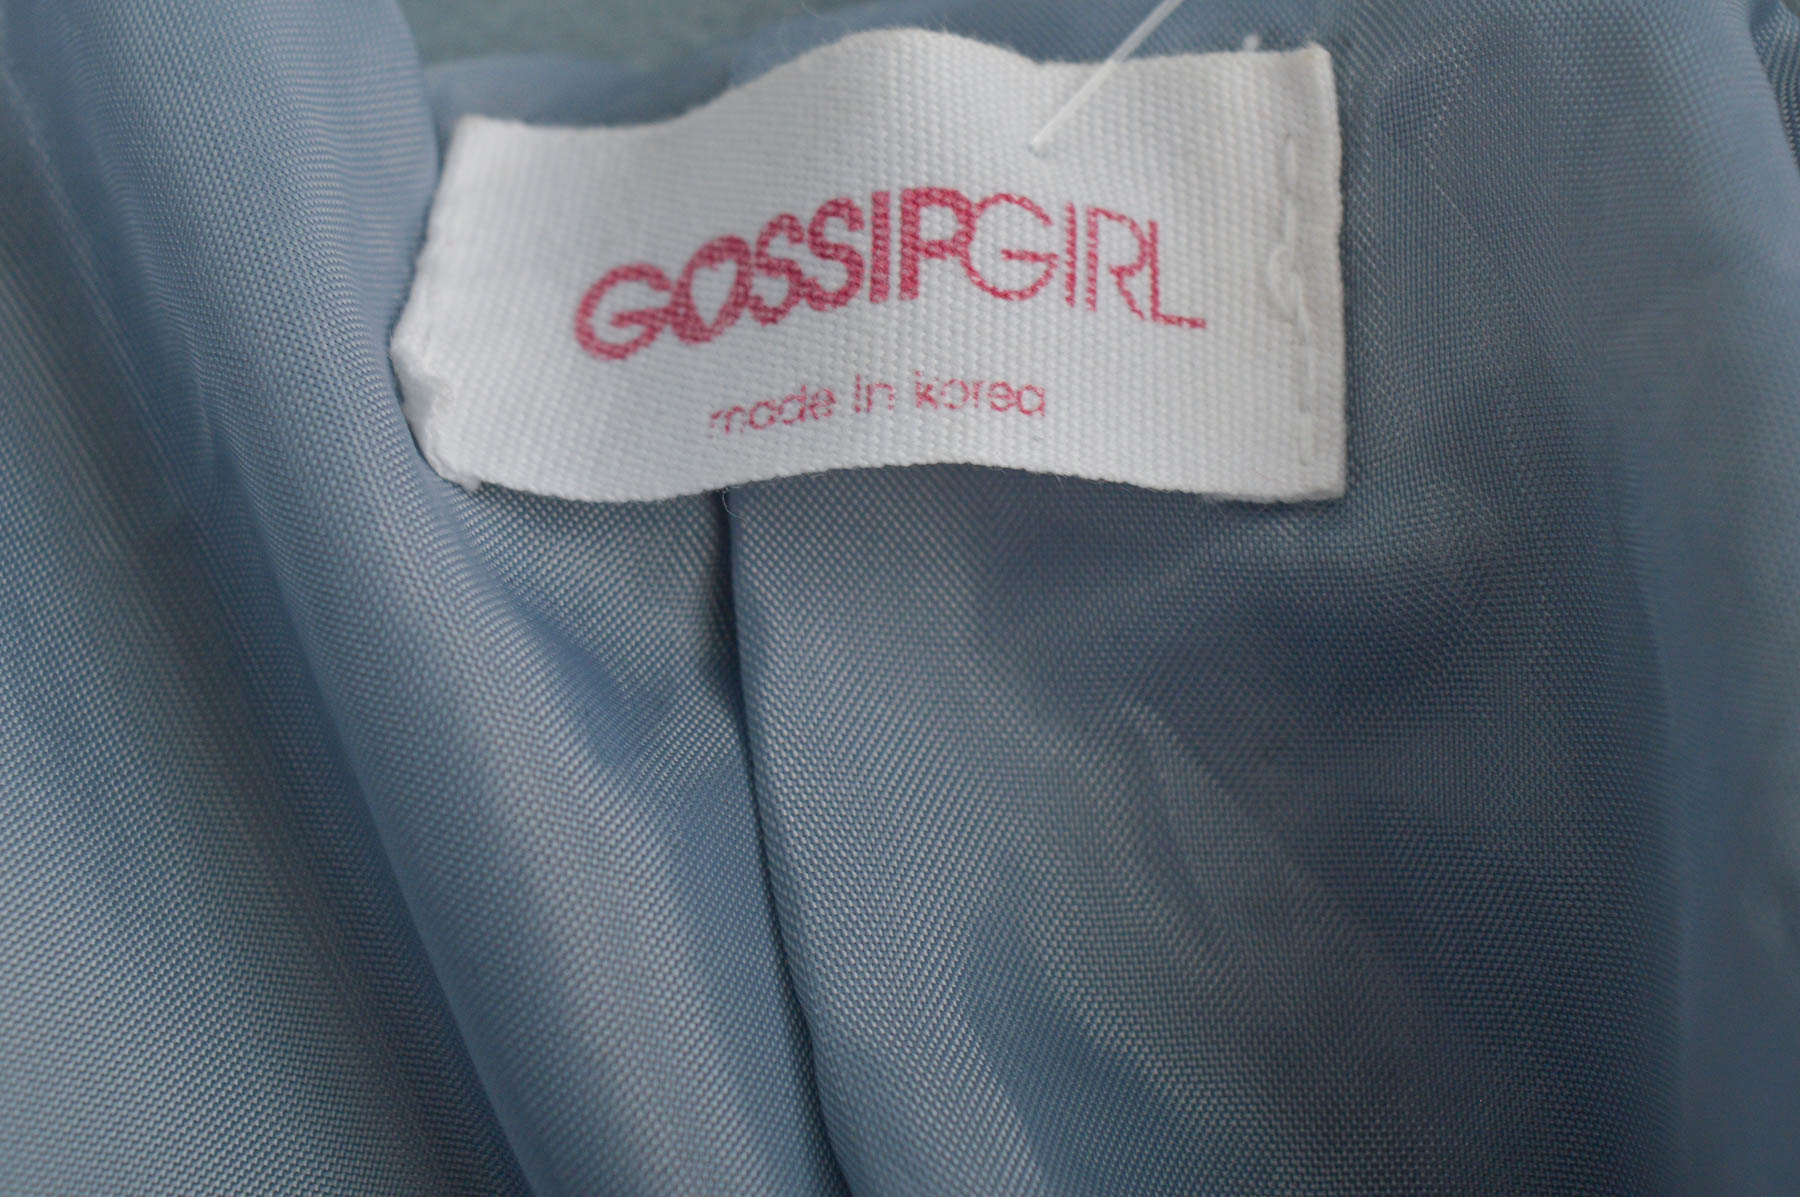 Płaszcz damski - Gossip Girl - 2